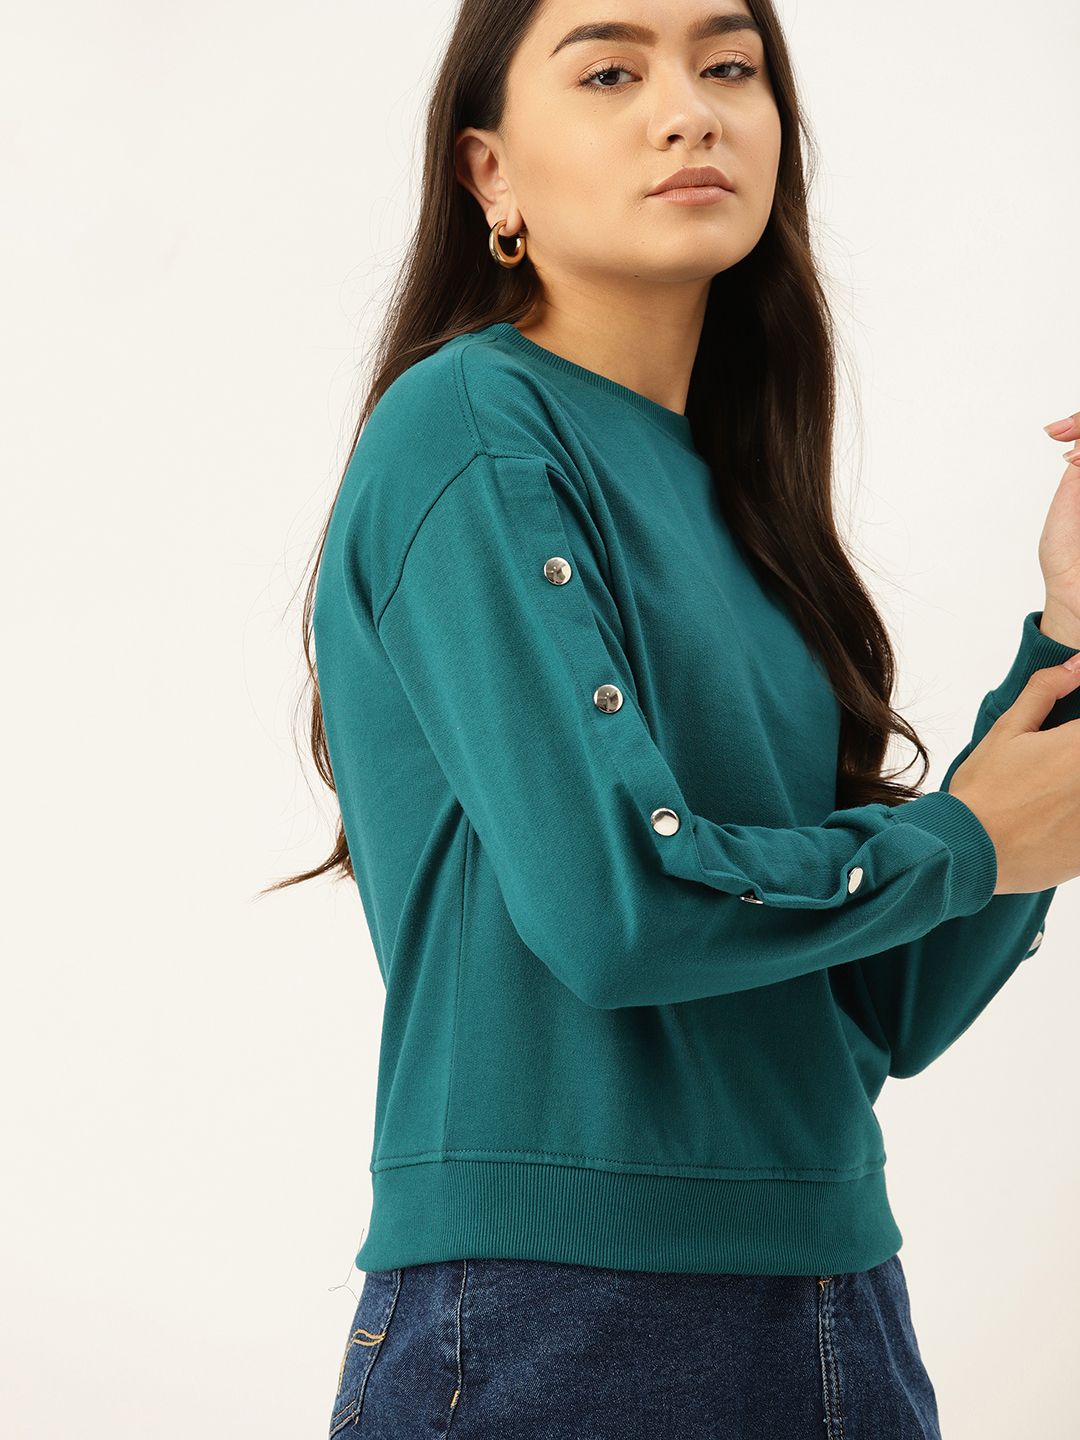 DressBerry Women Teal Green Solid Drop-Shoulder Sweatshirt Price in India